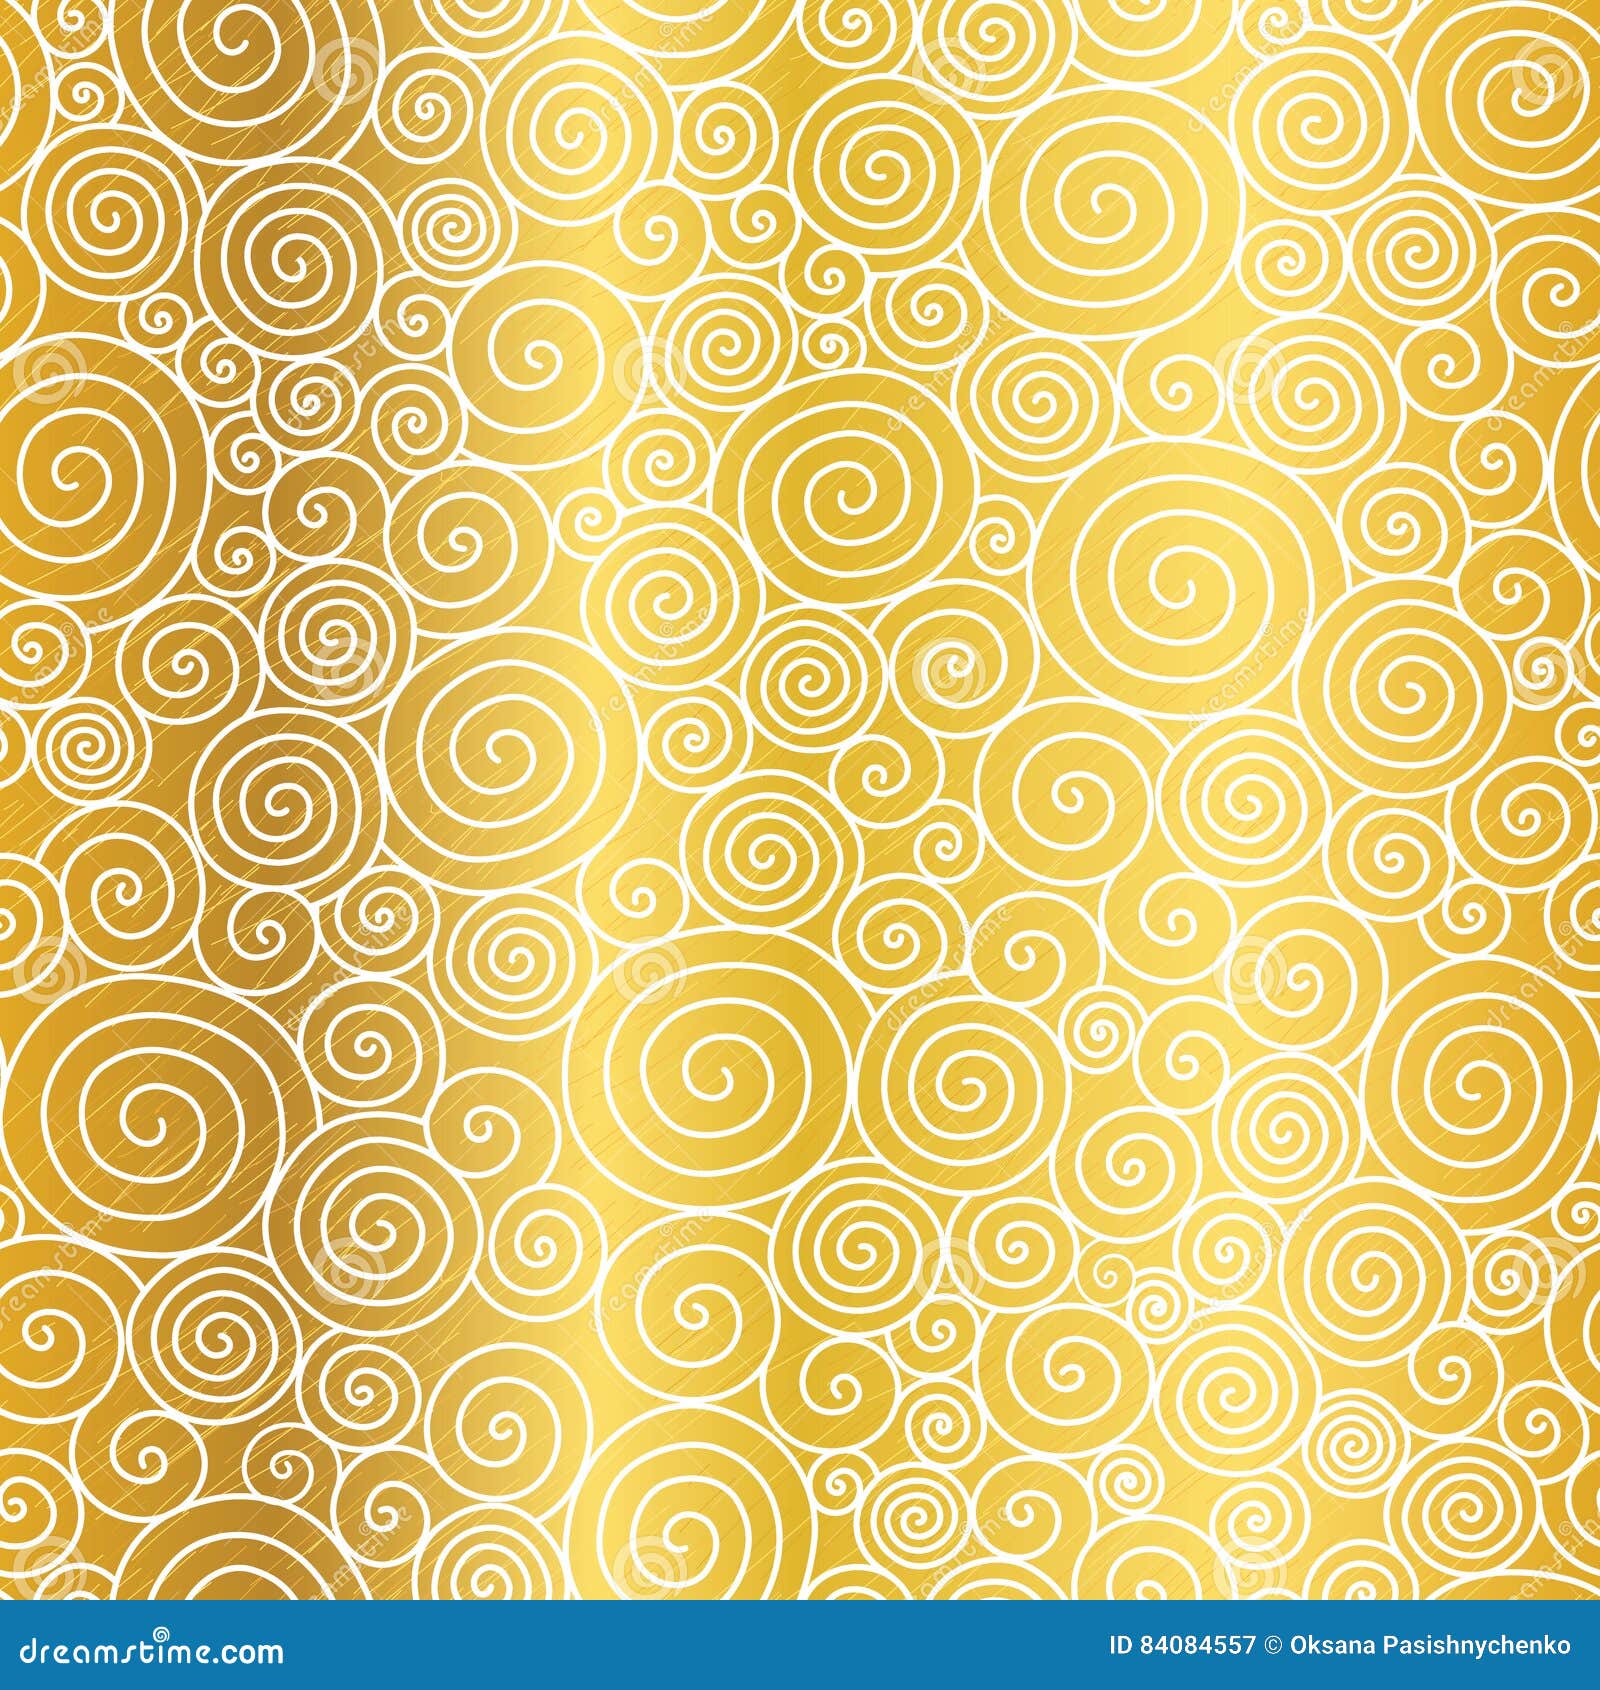 Họa tiết vòng xoáy vàng trên nền hình nền trơn: Tạm gác mọi lo lắng, nhìn vào họa tiết vòng xoáy vàng trên nền hình nền trơn hưởng thụ một khoảng khắc thiên nhiên, thanh bình nhất. Sự hài hòa trong thiết kế tạo ra sự cân bằng và tinh tế nhất, sẽ khiến bạn bị mê hoặc bởi vẻ đẹp quyến rũ của nó.